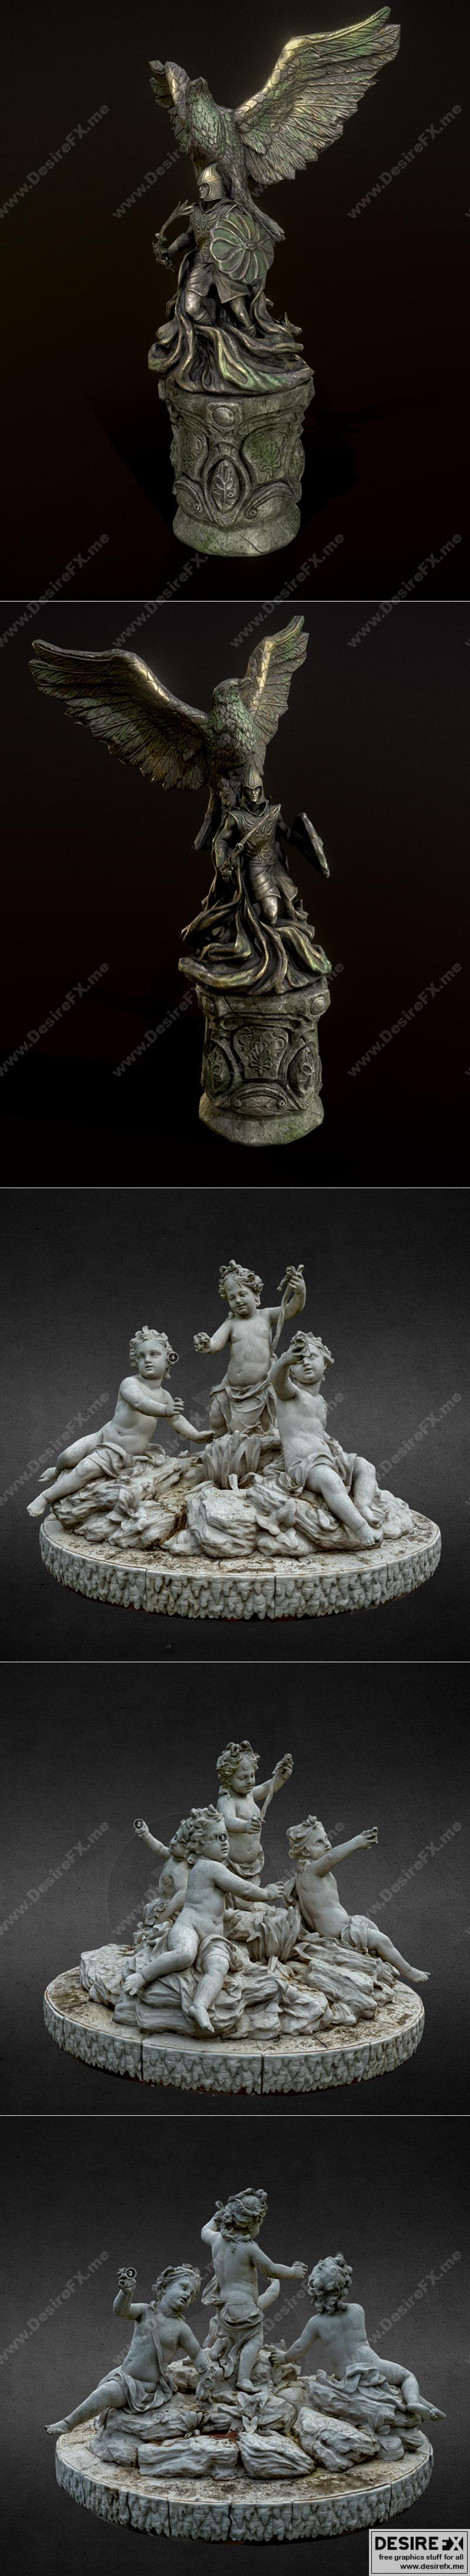 Desire FX 3d models | Ayleid Statue and Statue Aux Enfants dits – de ...